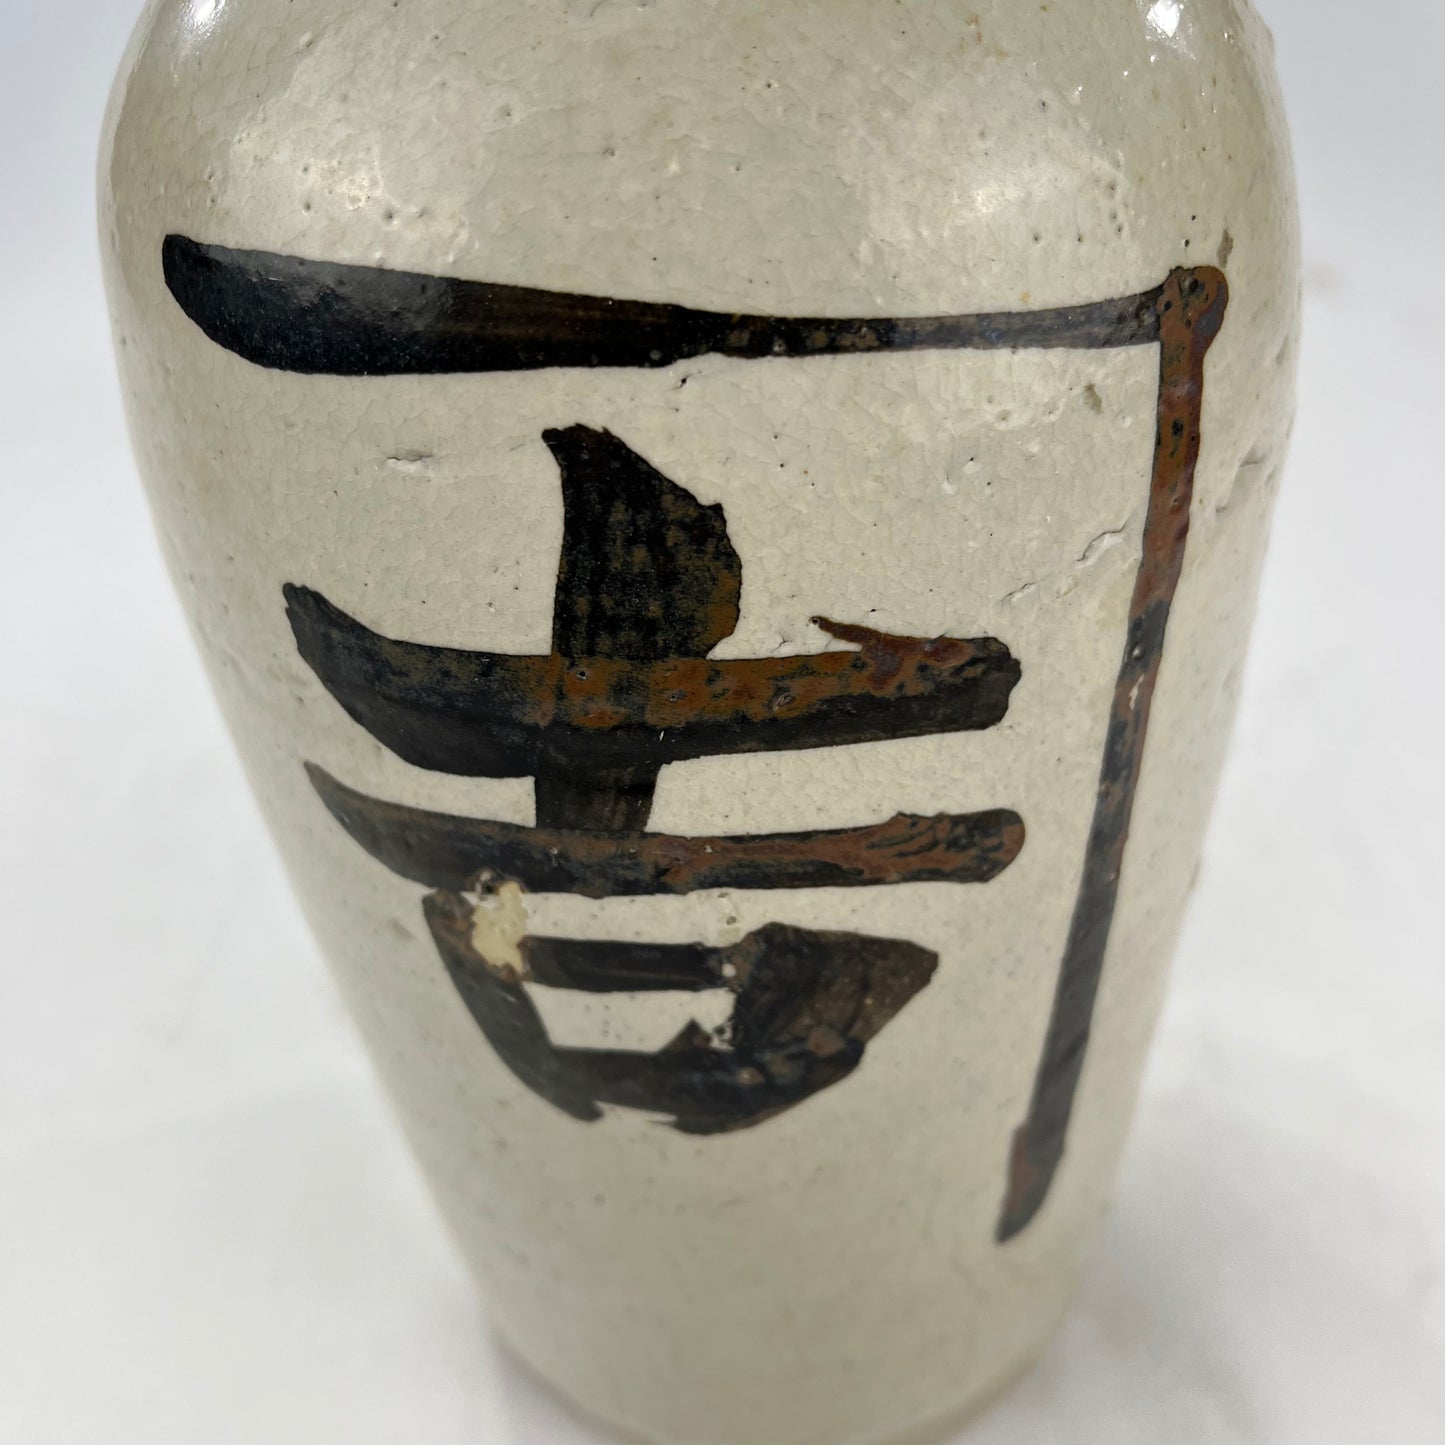 Antique Japanese (C.1900) Signed Tokkuri Sake Jug Sake Bottle / Vase 10"